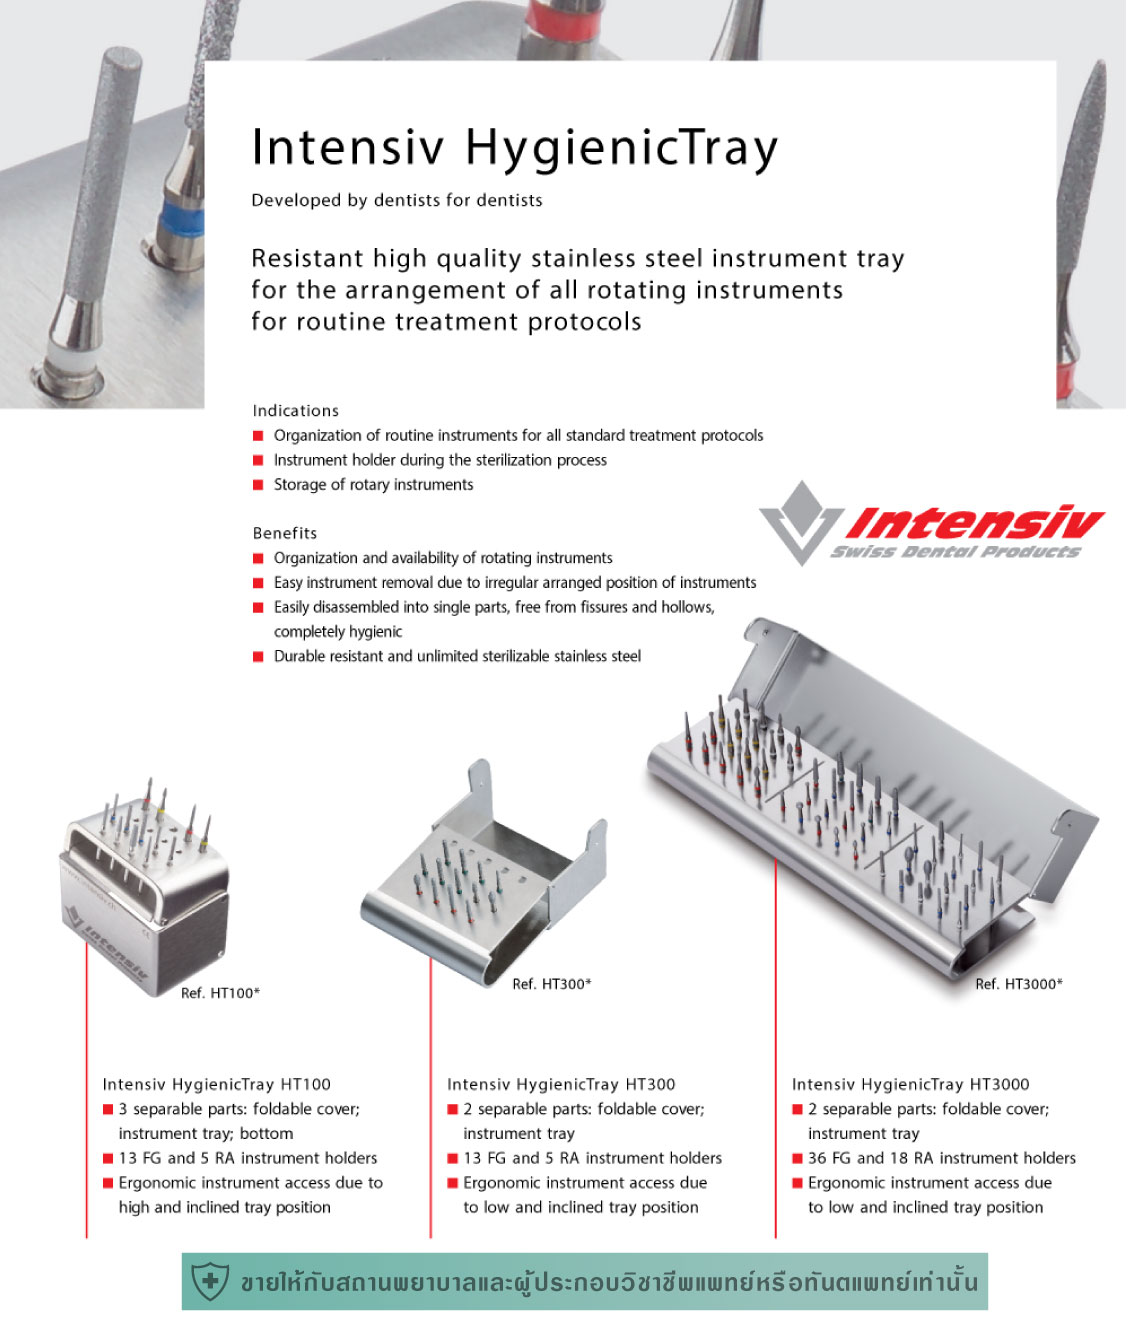 Intensiv HygienicTray